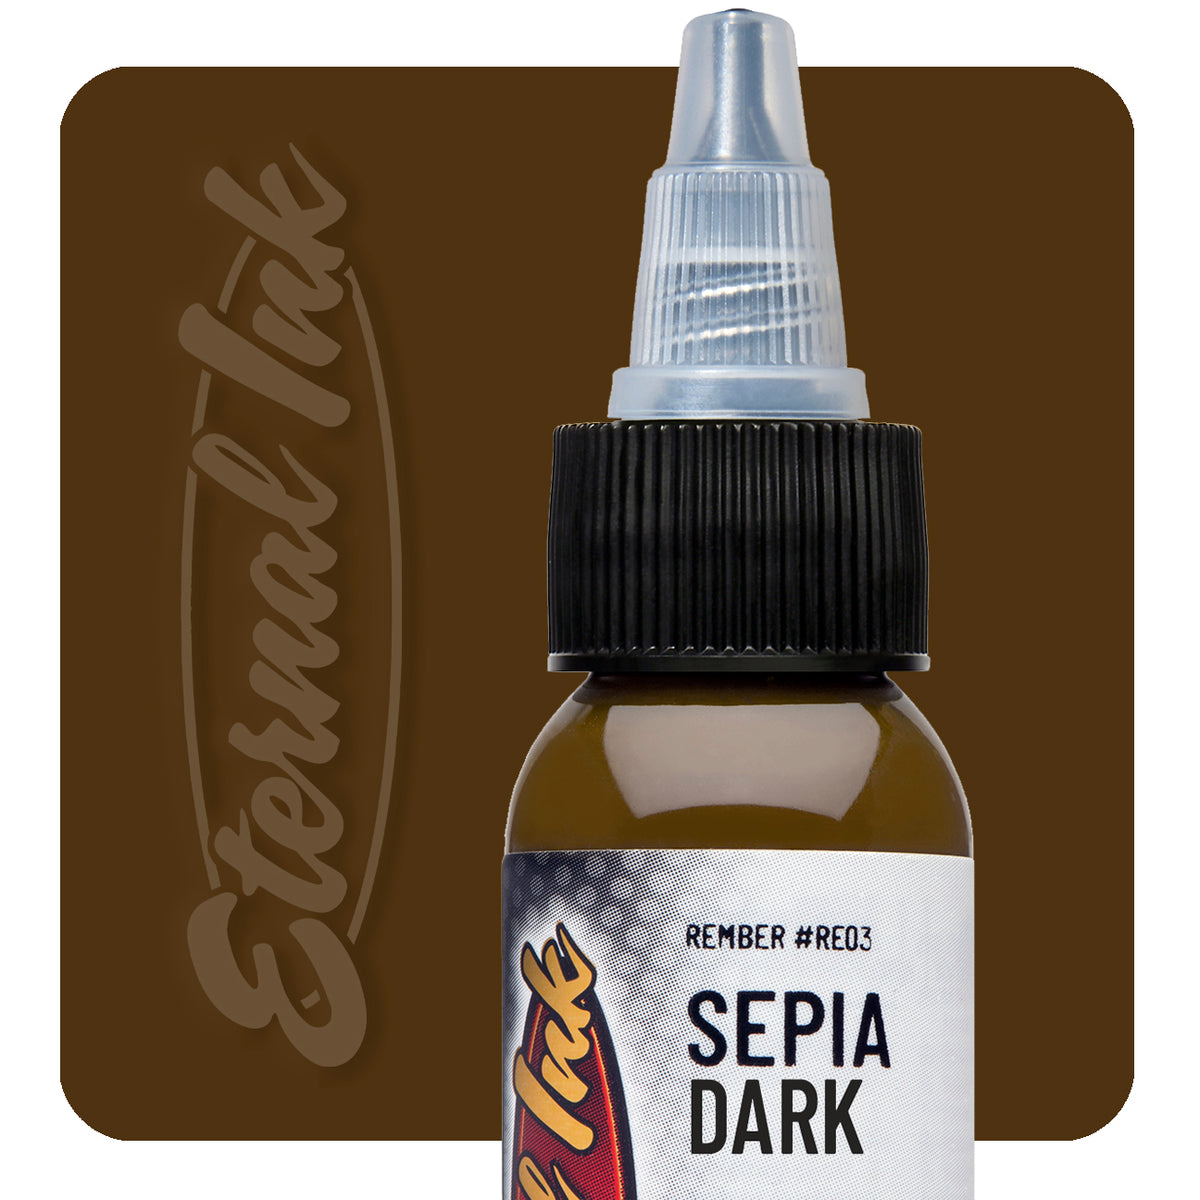 Sepia Dark